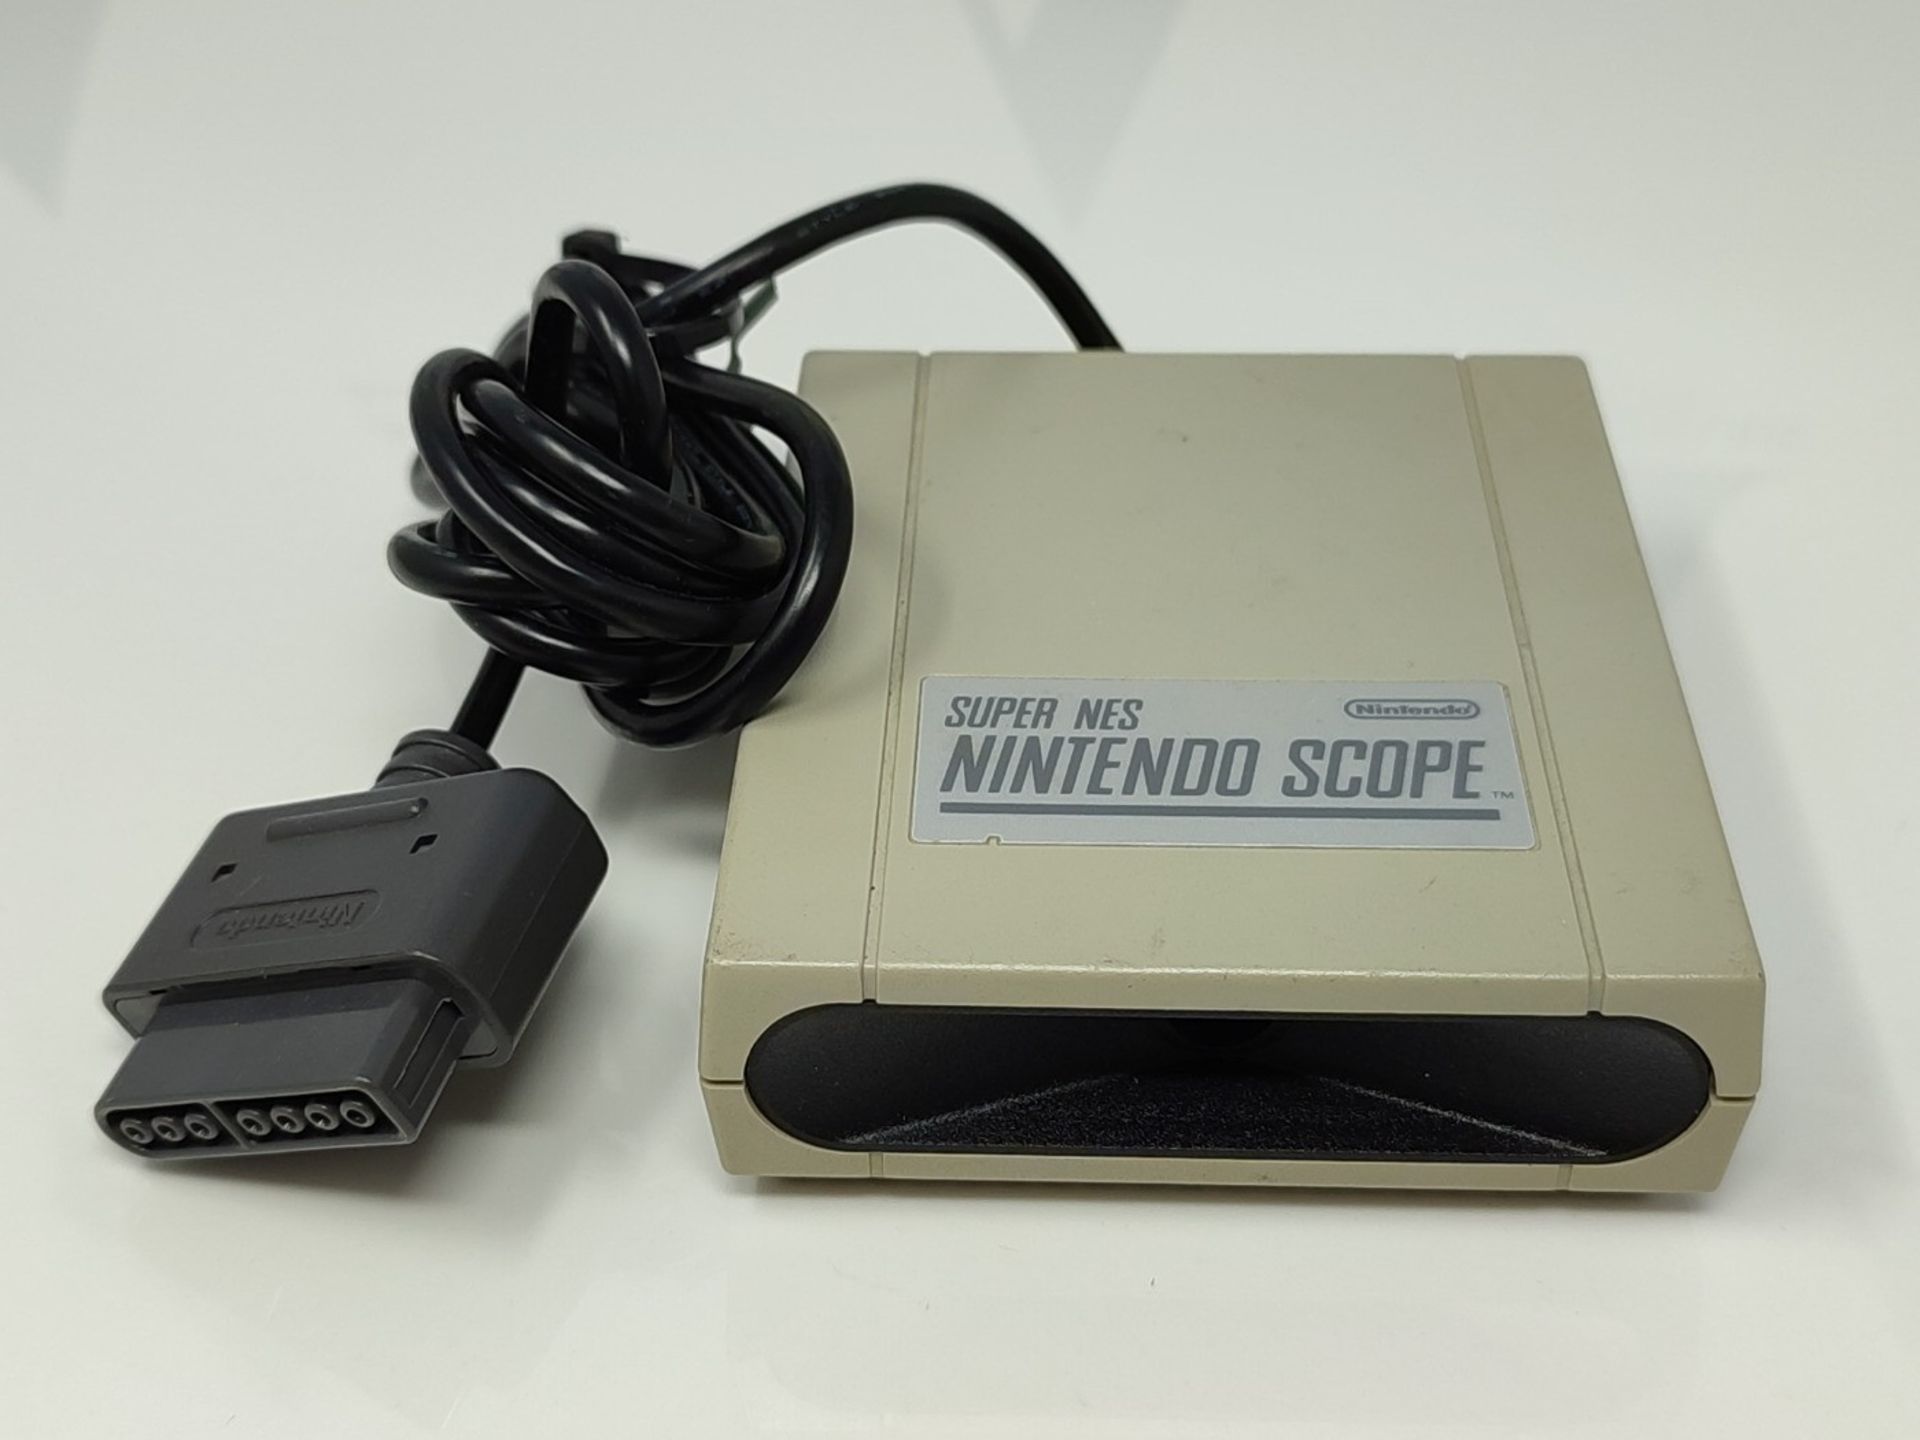 Nintendo SNES Scope Receiver model no.SNSP-014 - Image 2 of 2